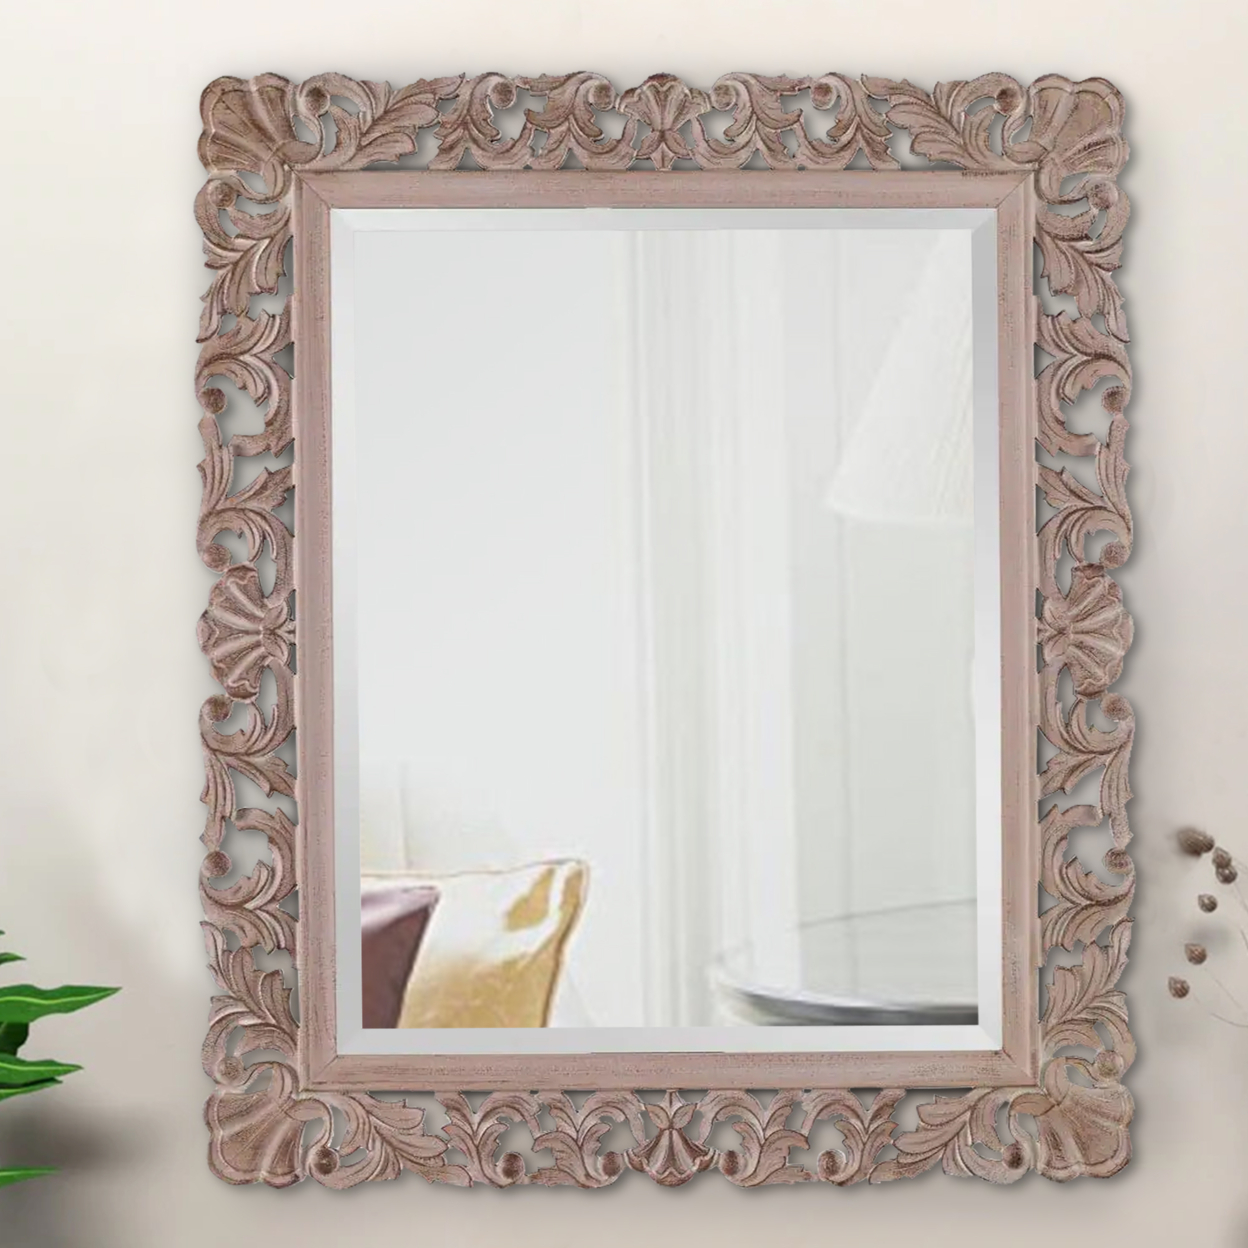 Rectangular Filigree Carved Wooden Frame Mirror, Natural Brown- Saltoro Sherpi